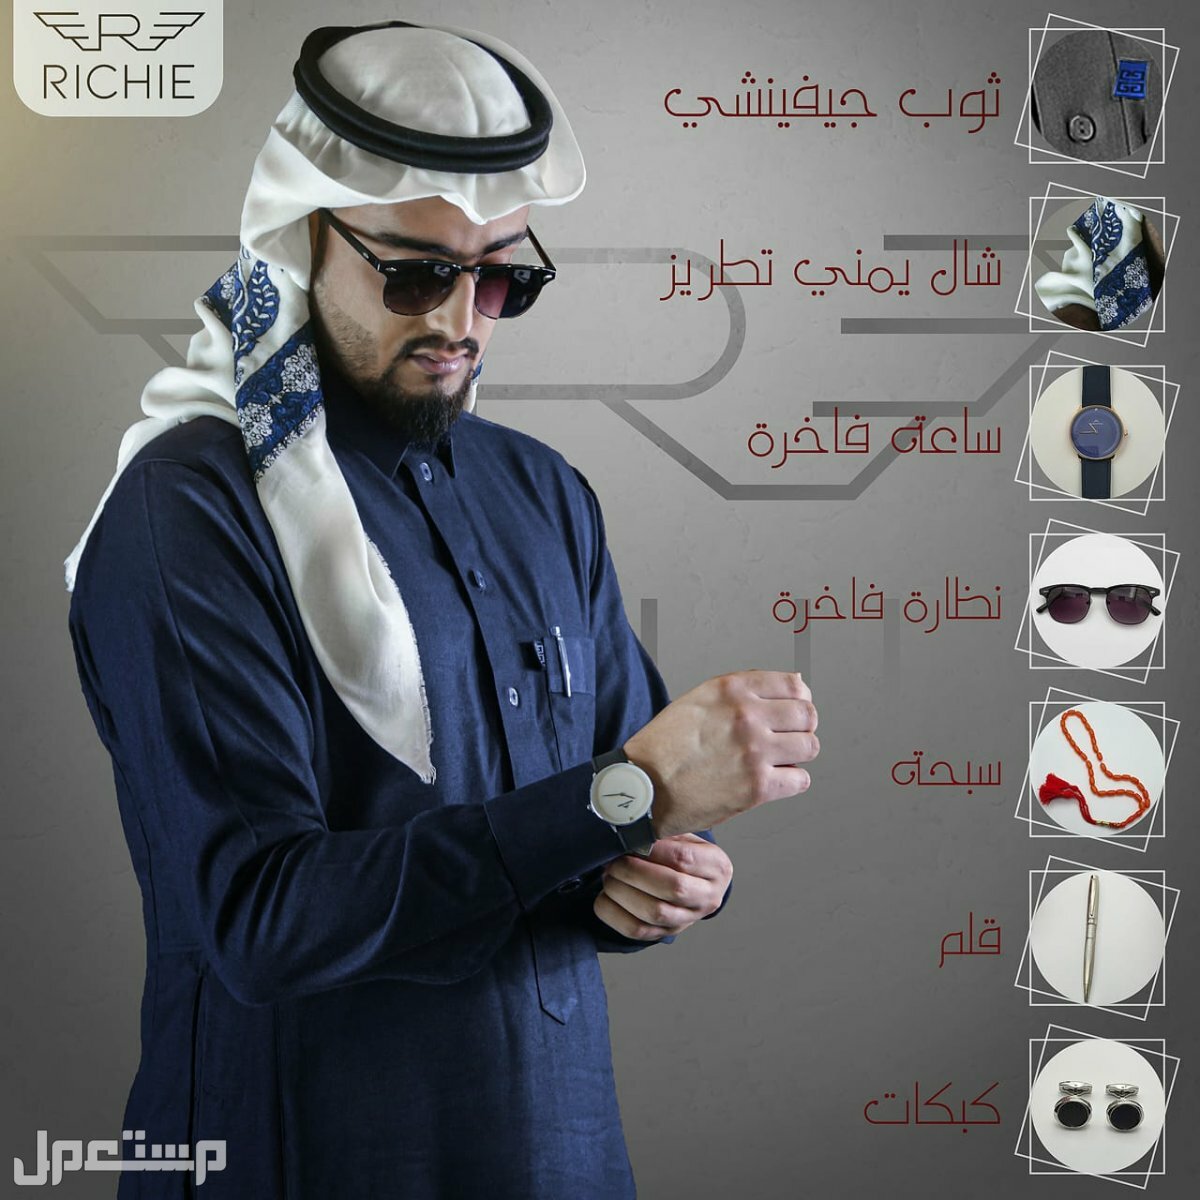 ثوب جفنشي مع شال يمني فاخر بملحقات مميزه